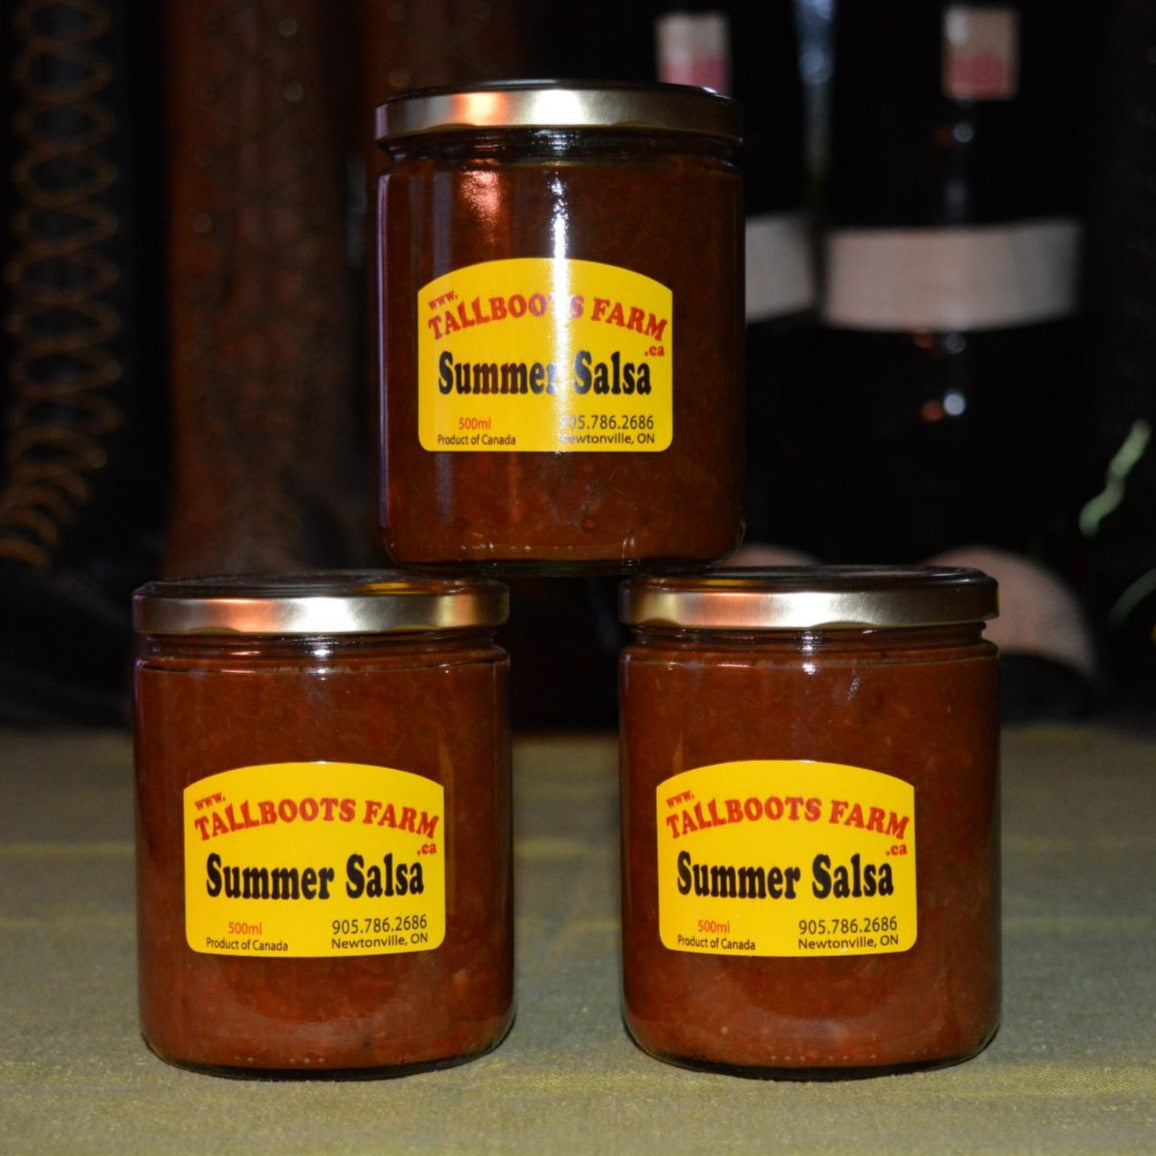 3 jars of summer salsa